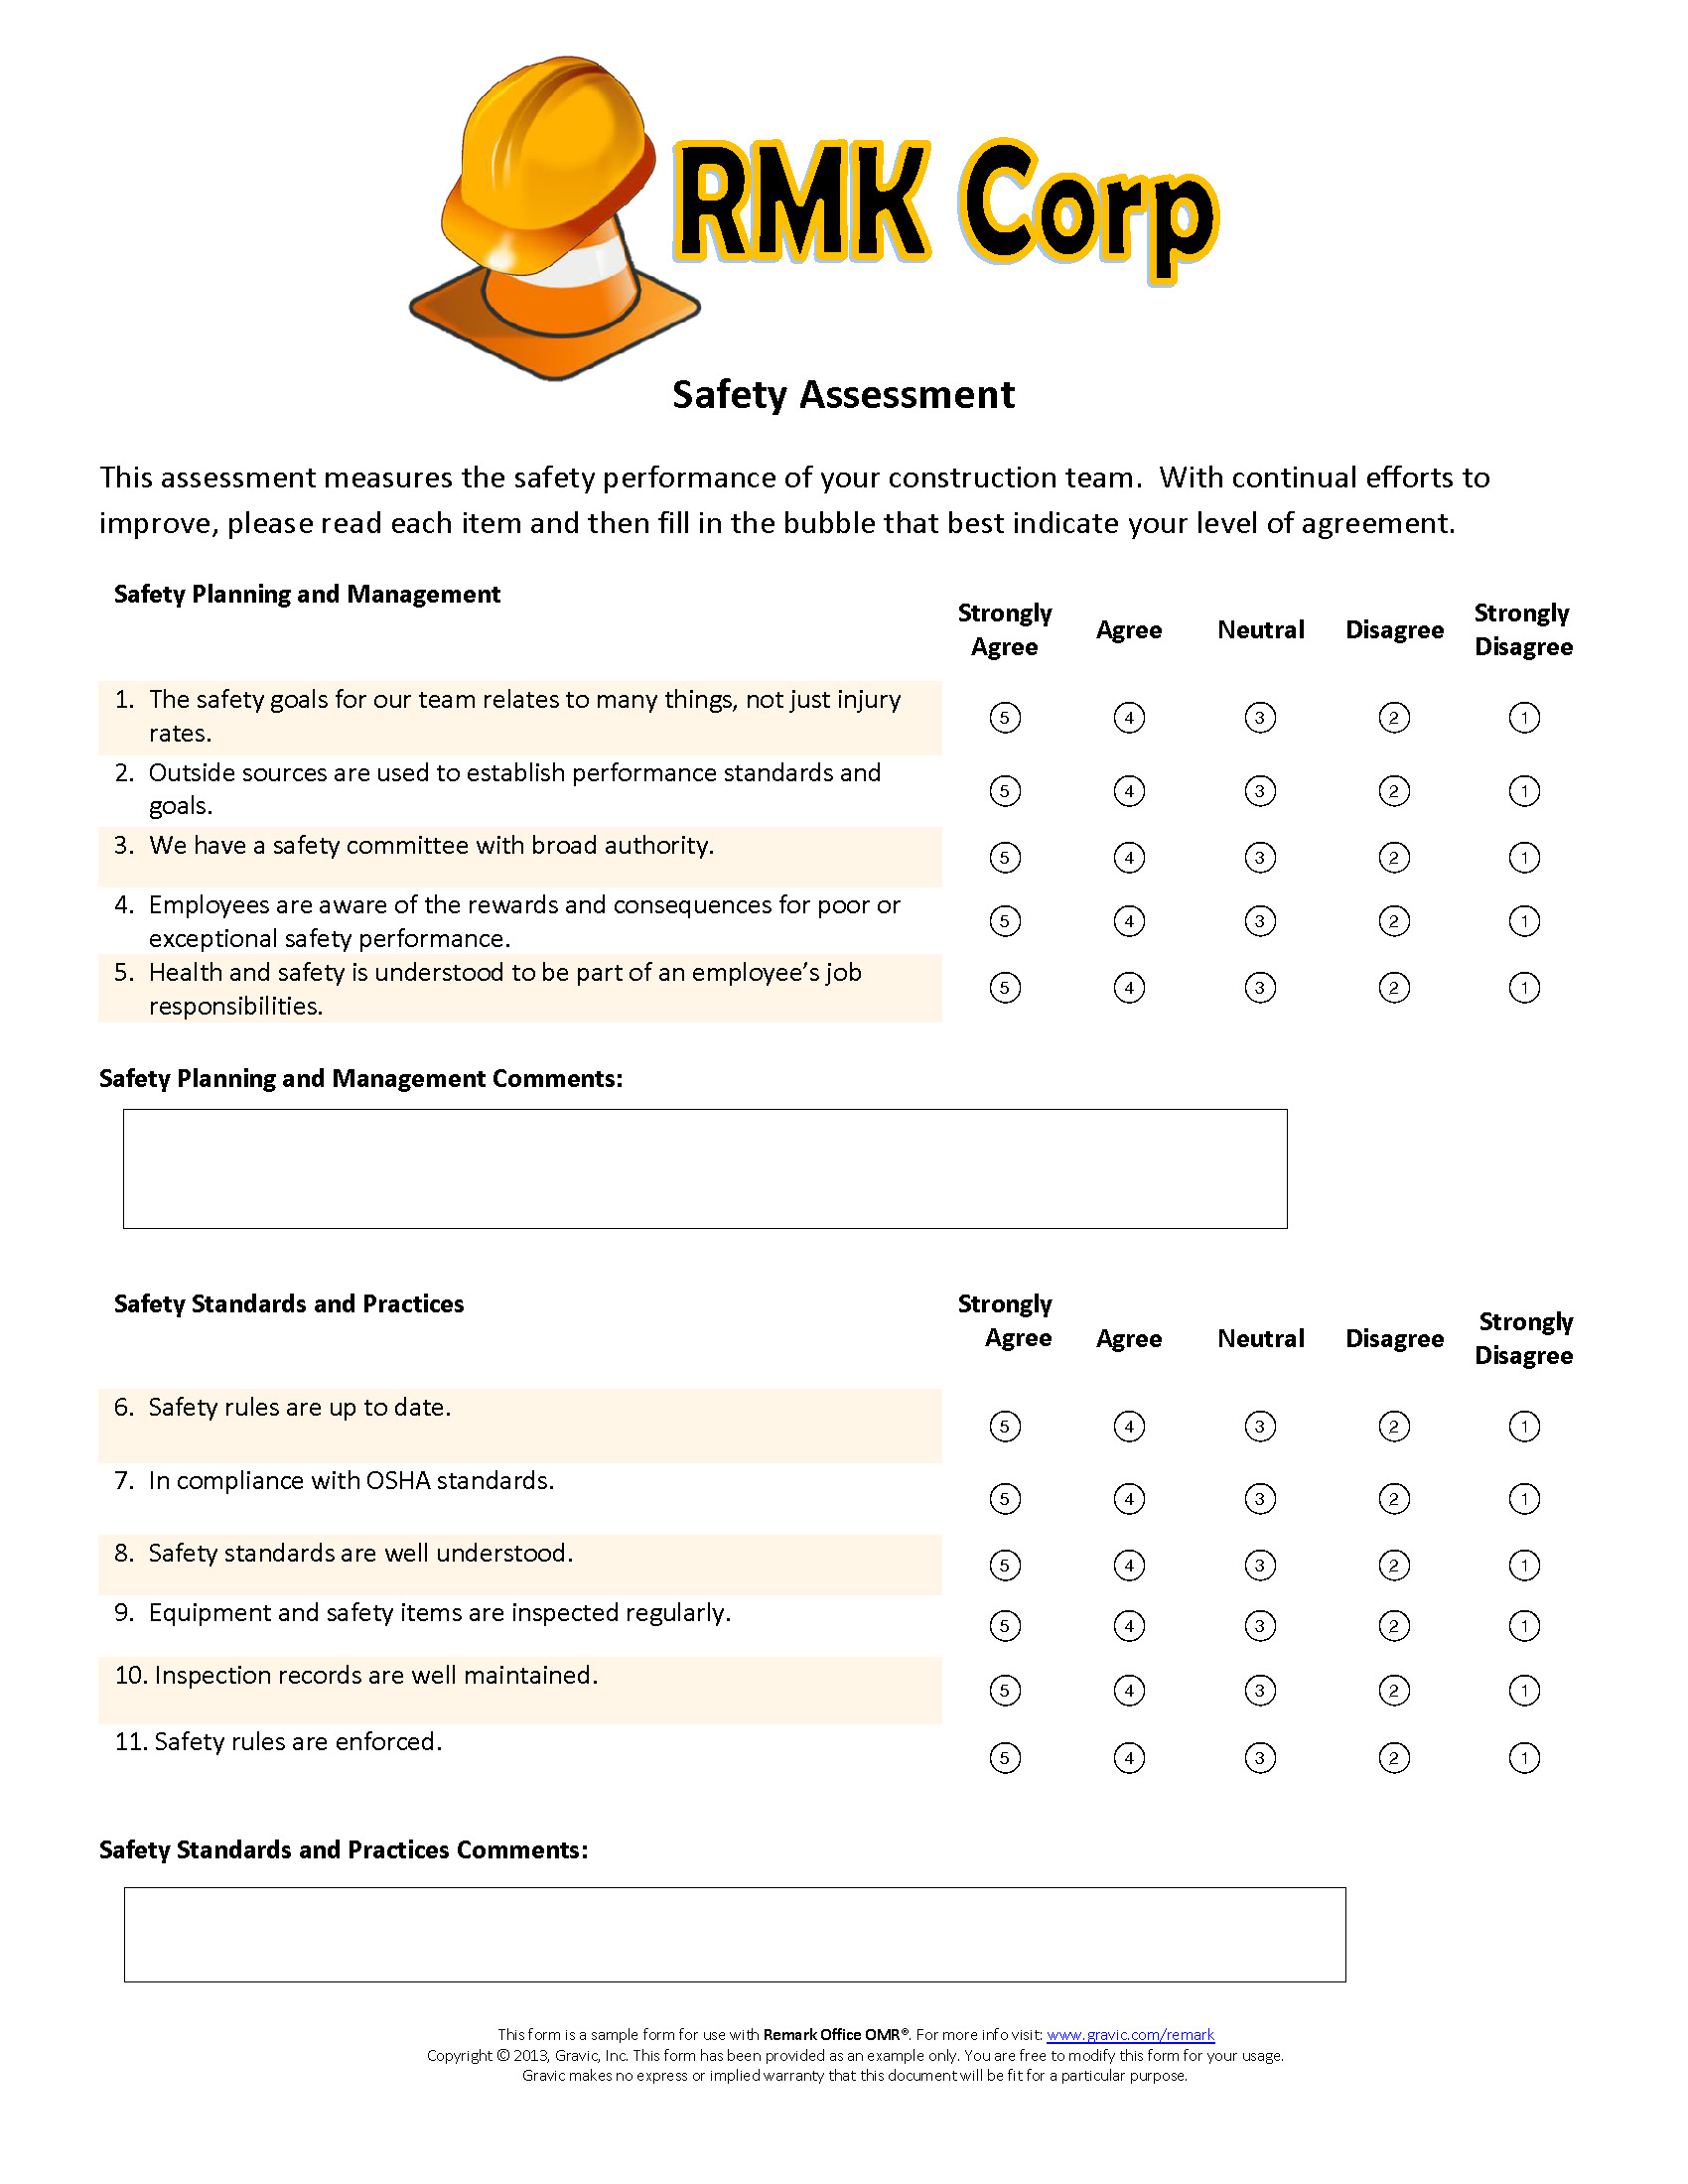 Safety assessment sample form